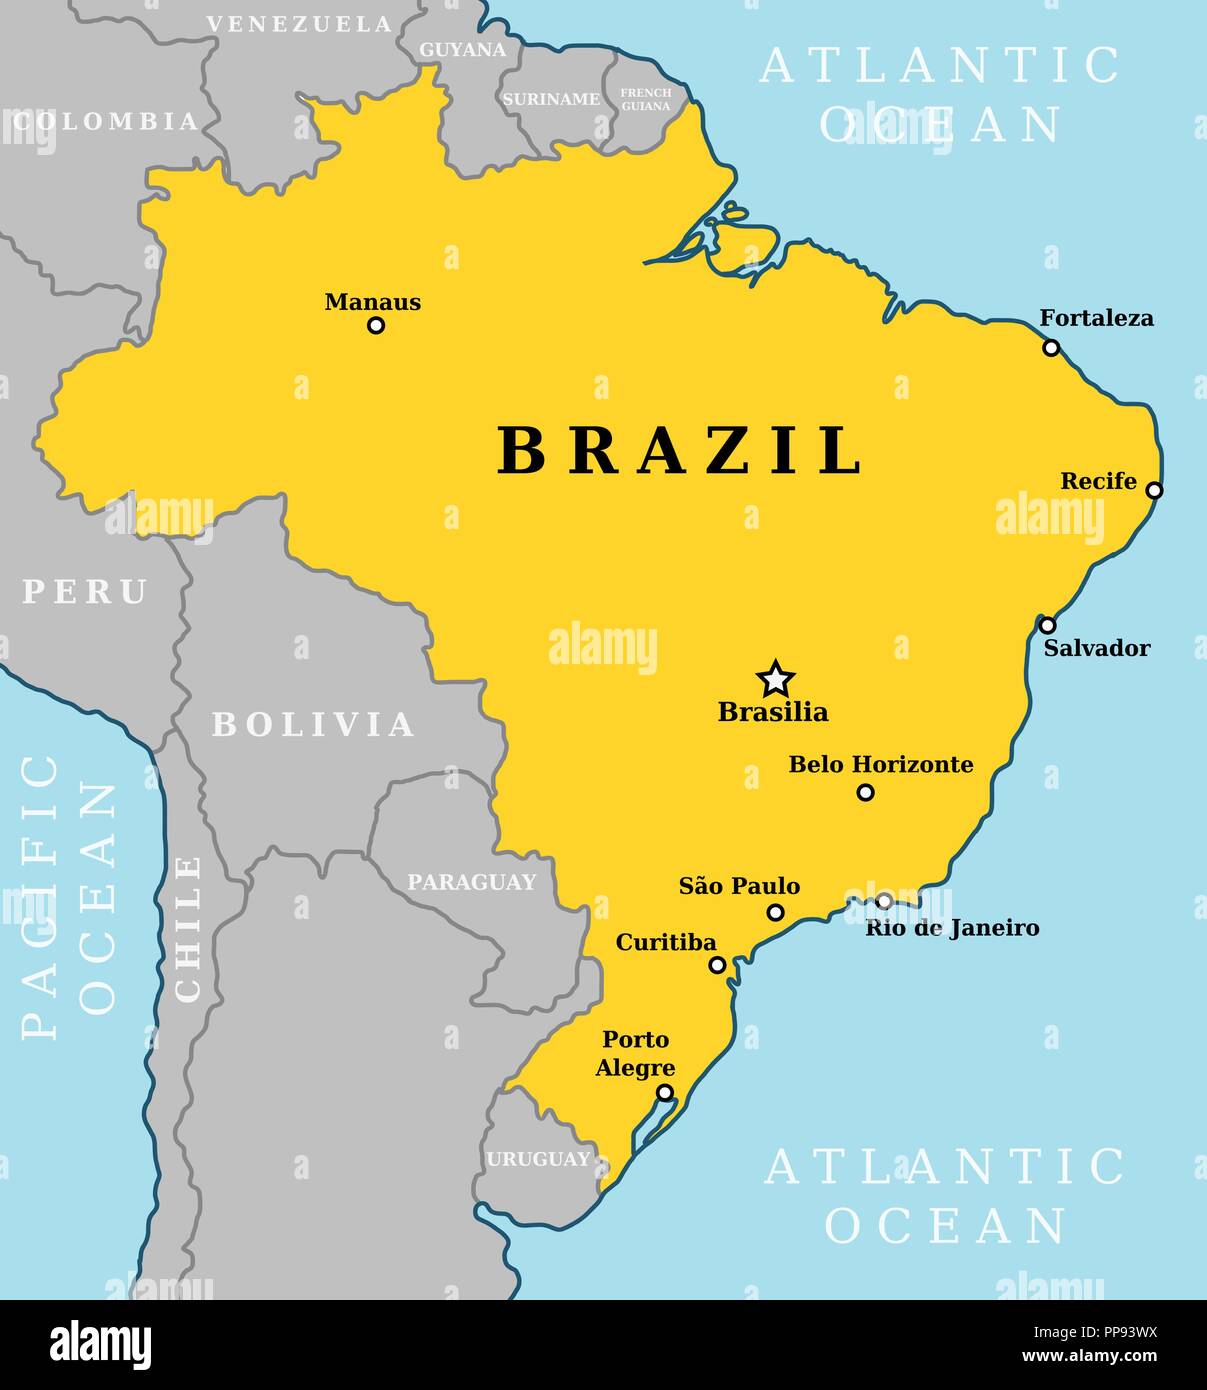 Mappa del Brasile. Scheda paese con dieci maggiori città tra cui Brasilia, capitale. Illustrazione Vettoriale